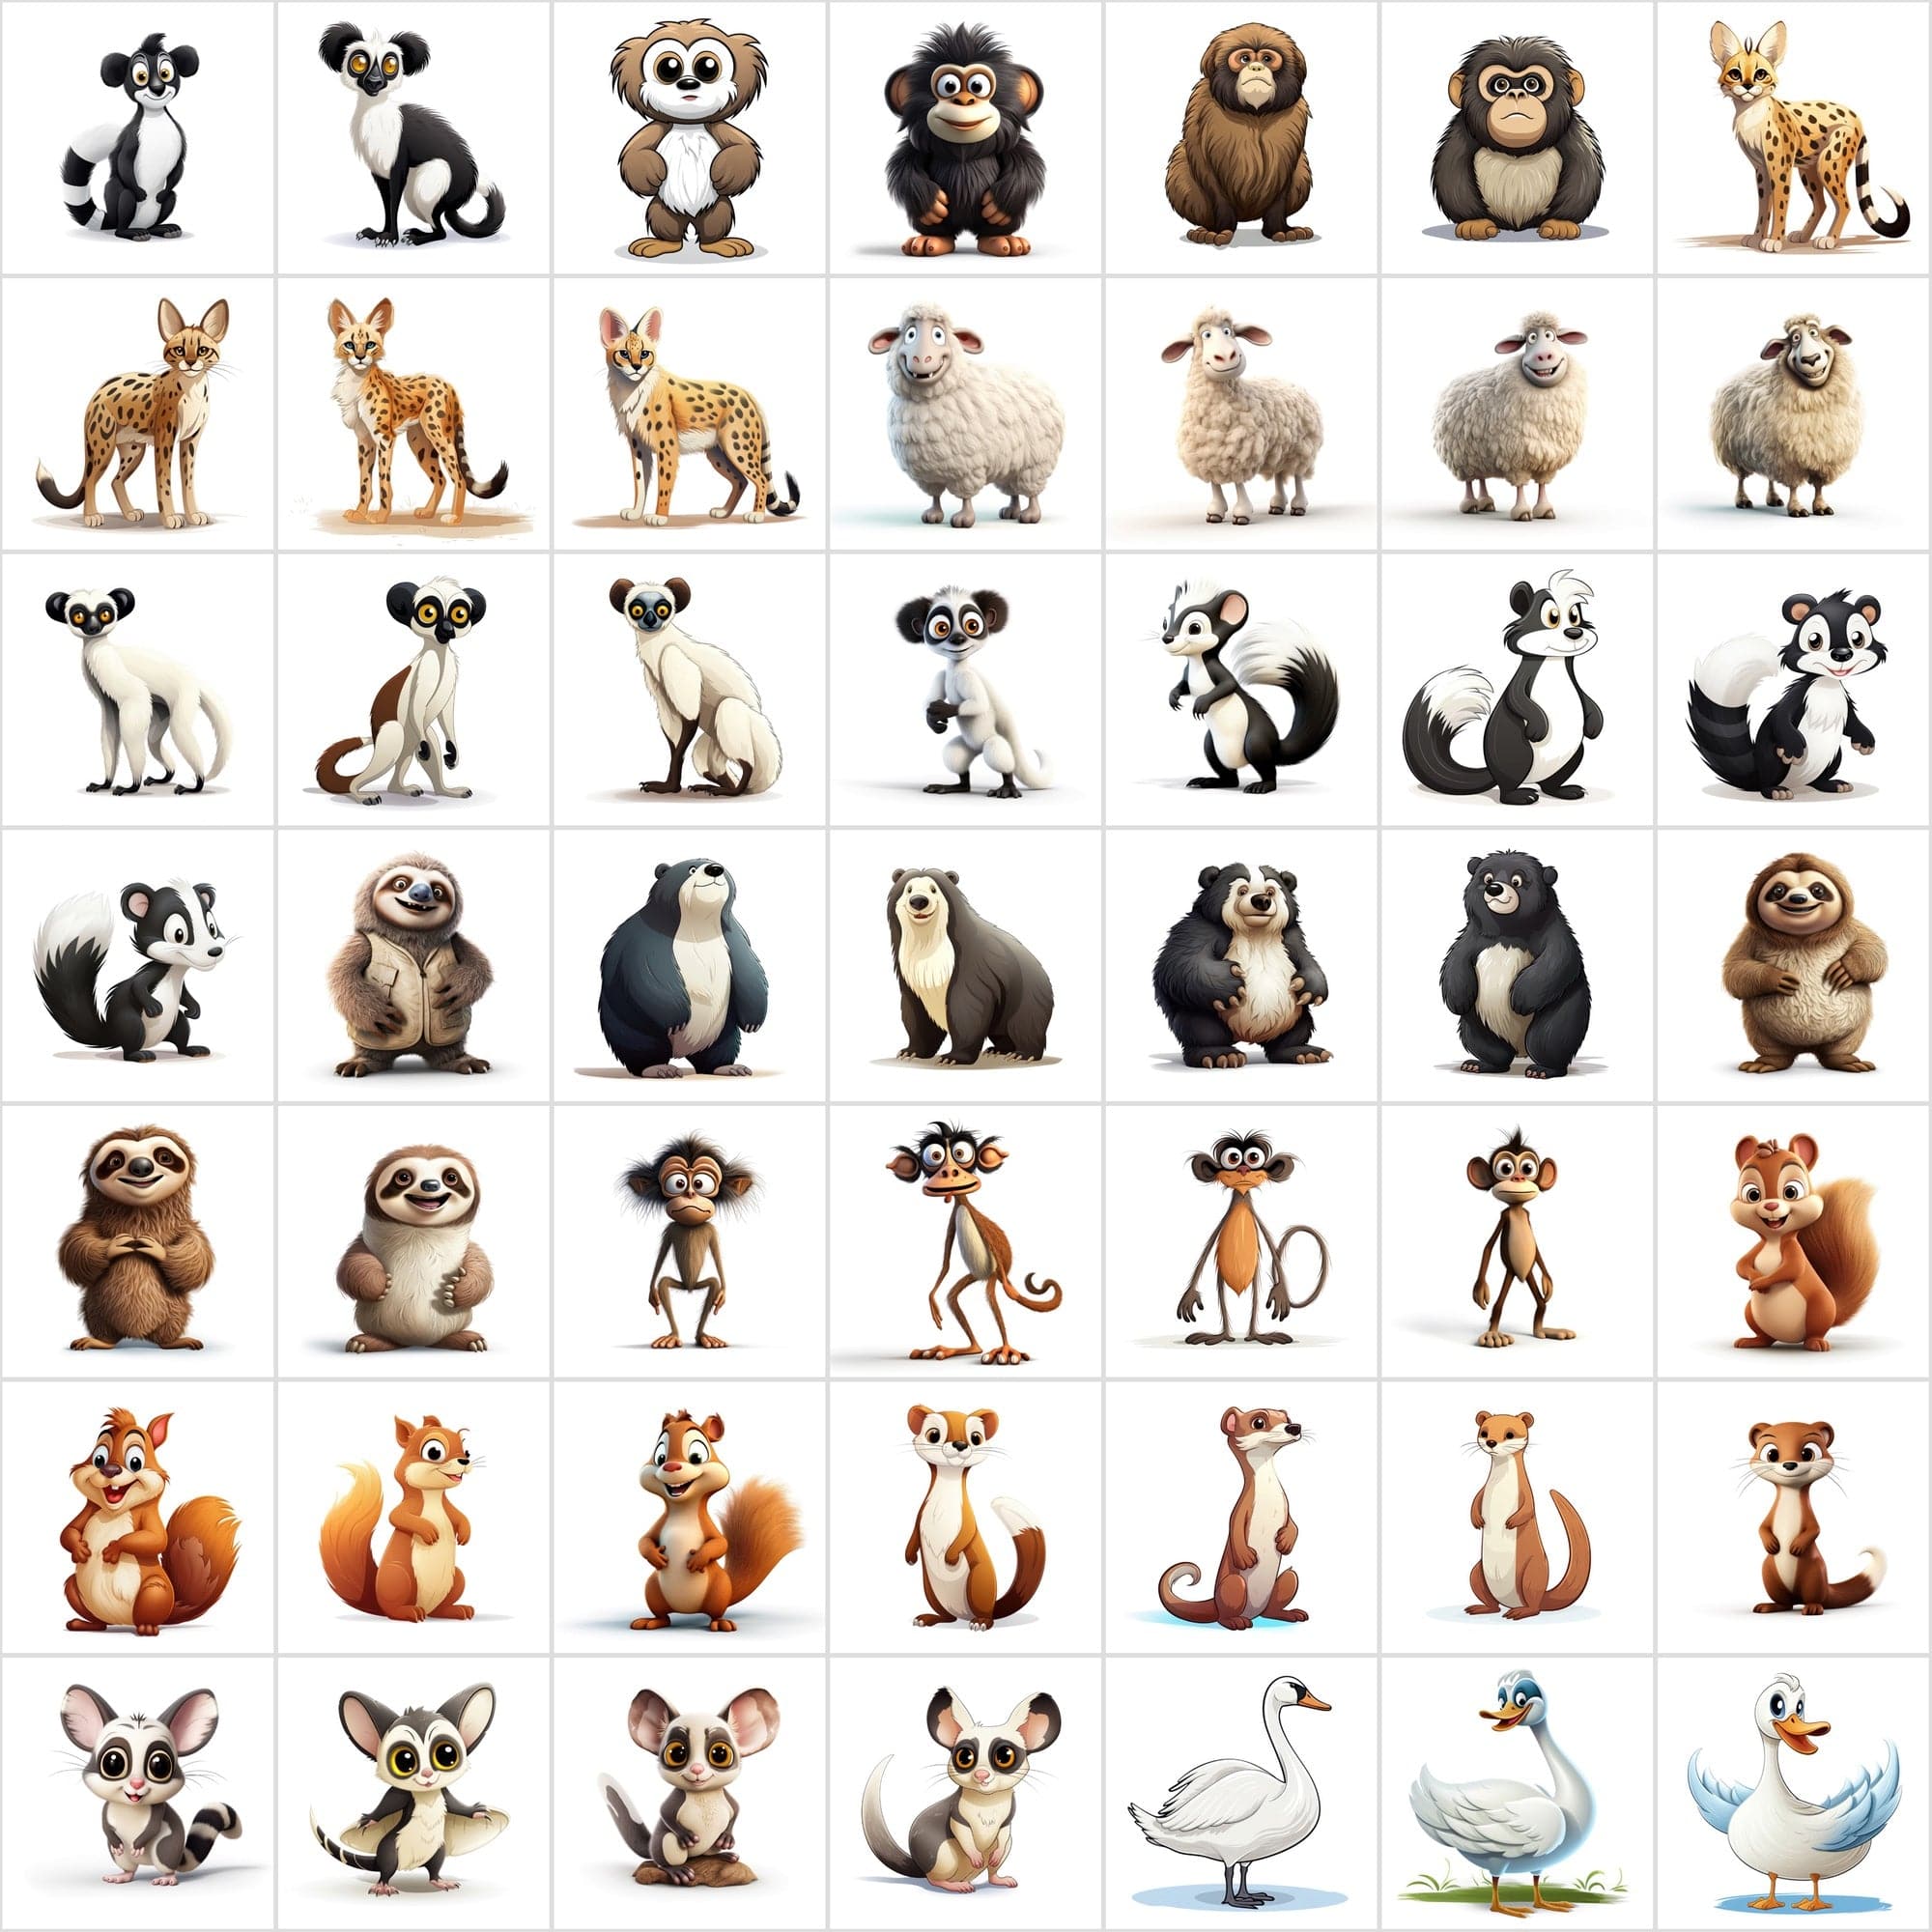 550 Animal Illustration Bundle - High-Resolution JPG & PNG, Commercial Use, Diverse Wildlife Art Digital Download Sumobundle